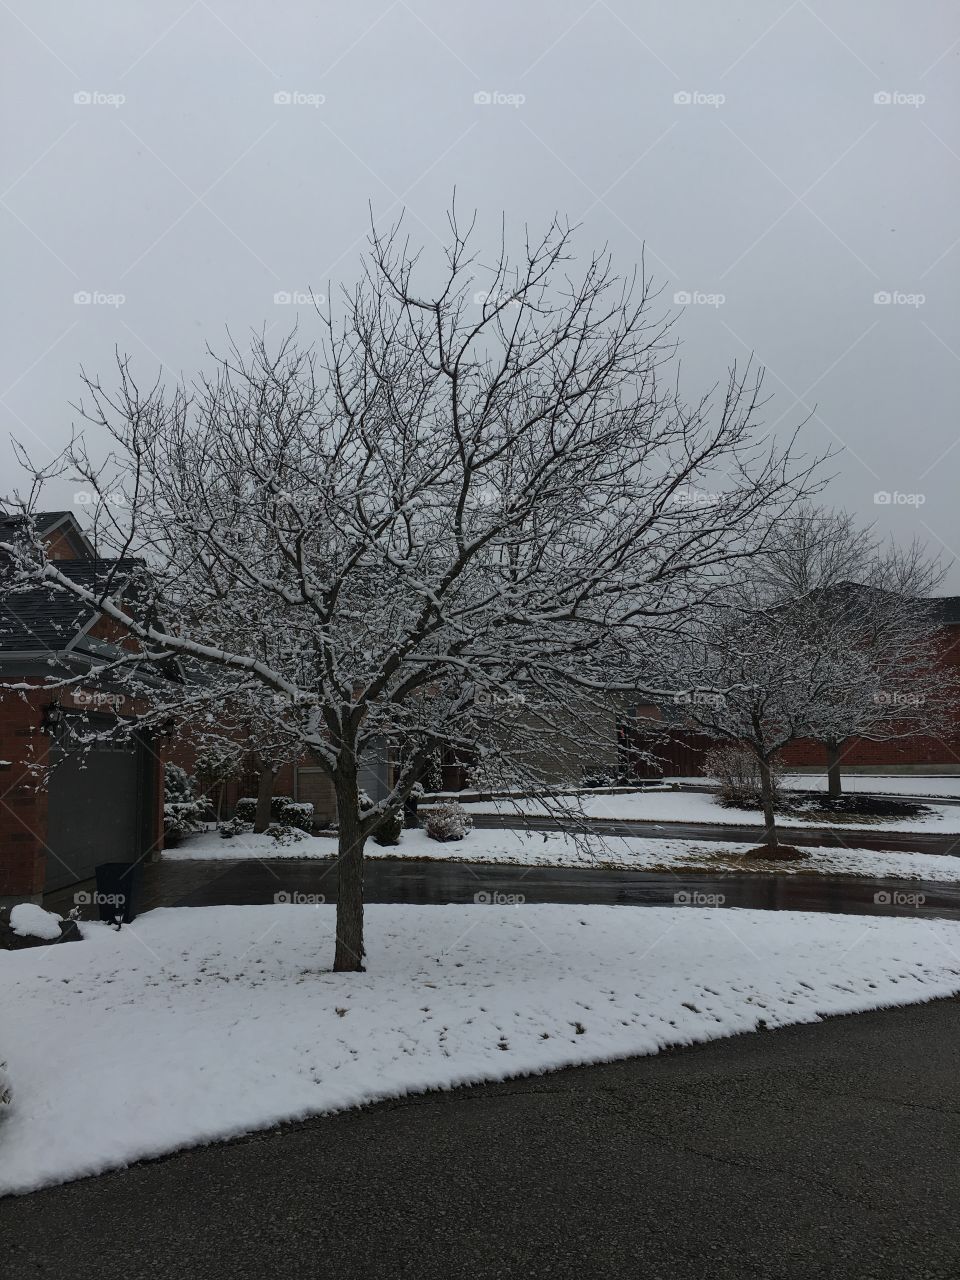 A frozen tree on a crisp winter day.